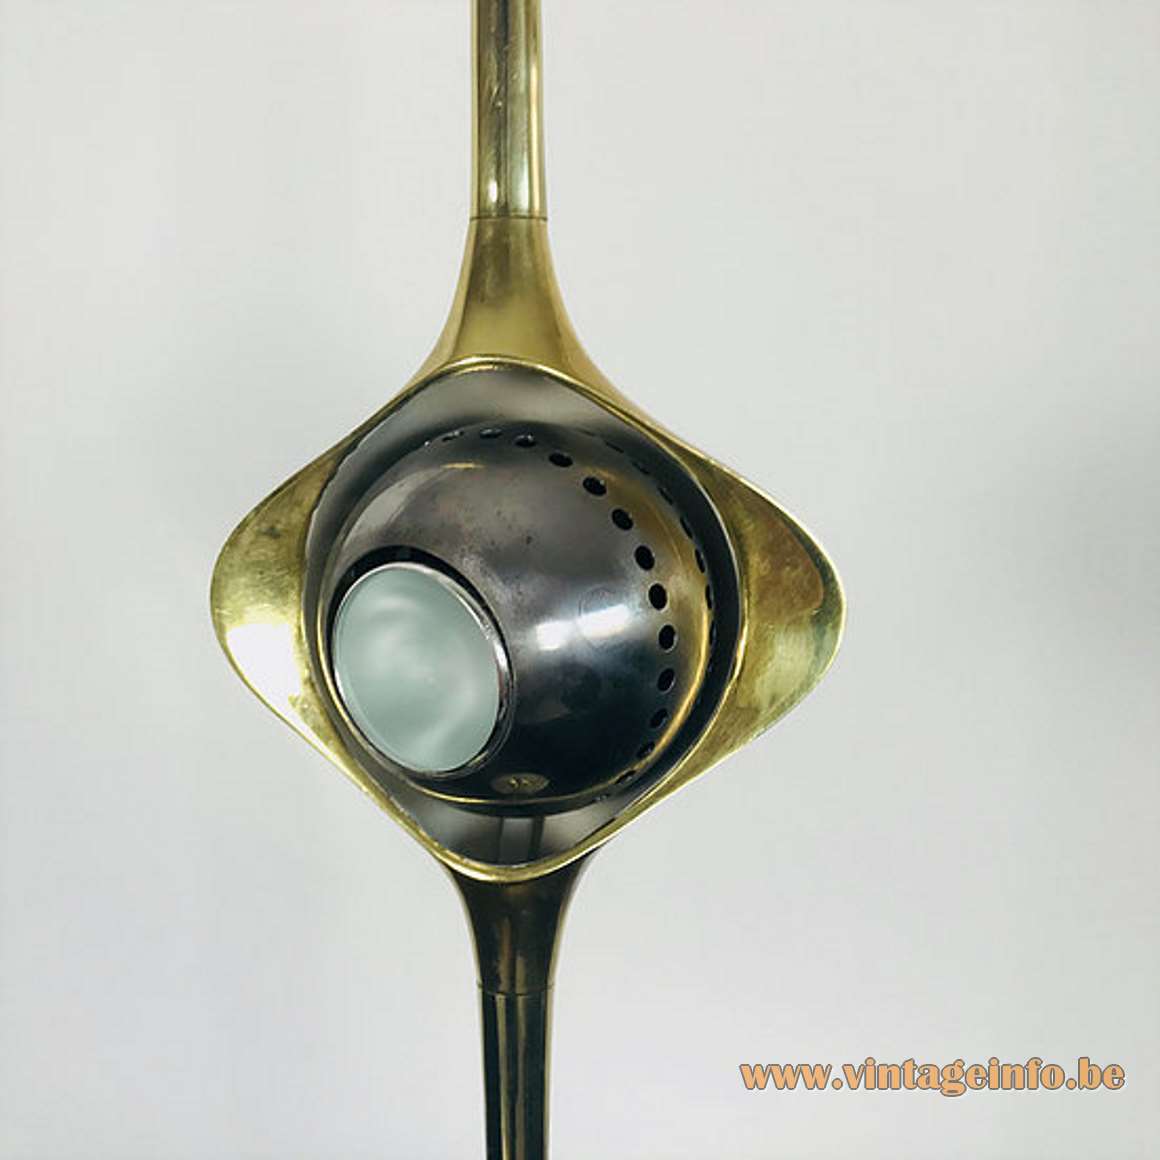 Angello Lelii Cobra table lamp white brass base long rod magnetised globe Lelli design 1960s Arredoluce 